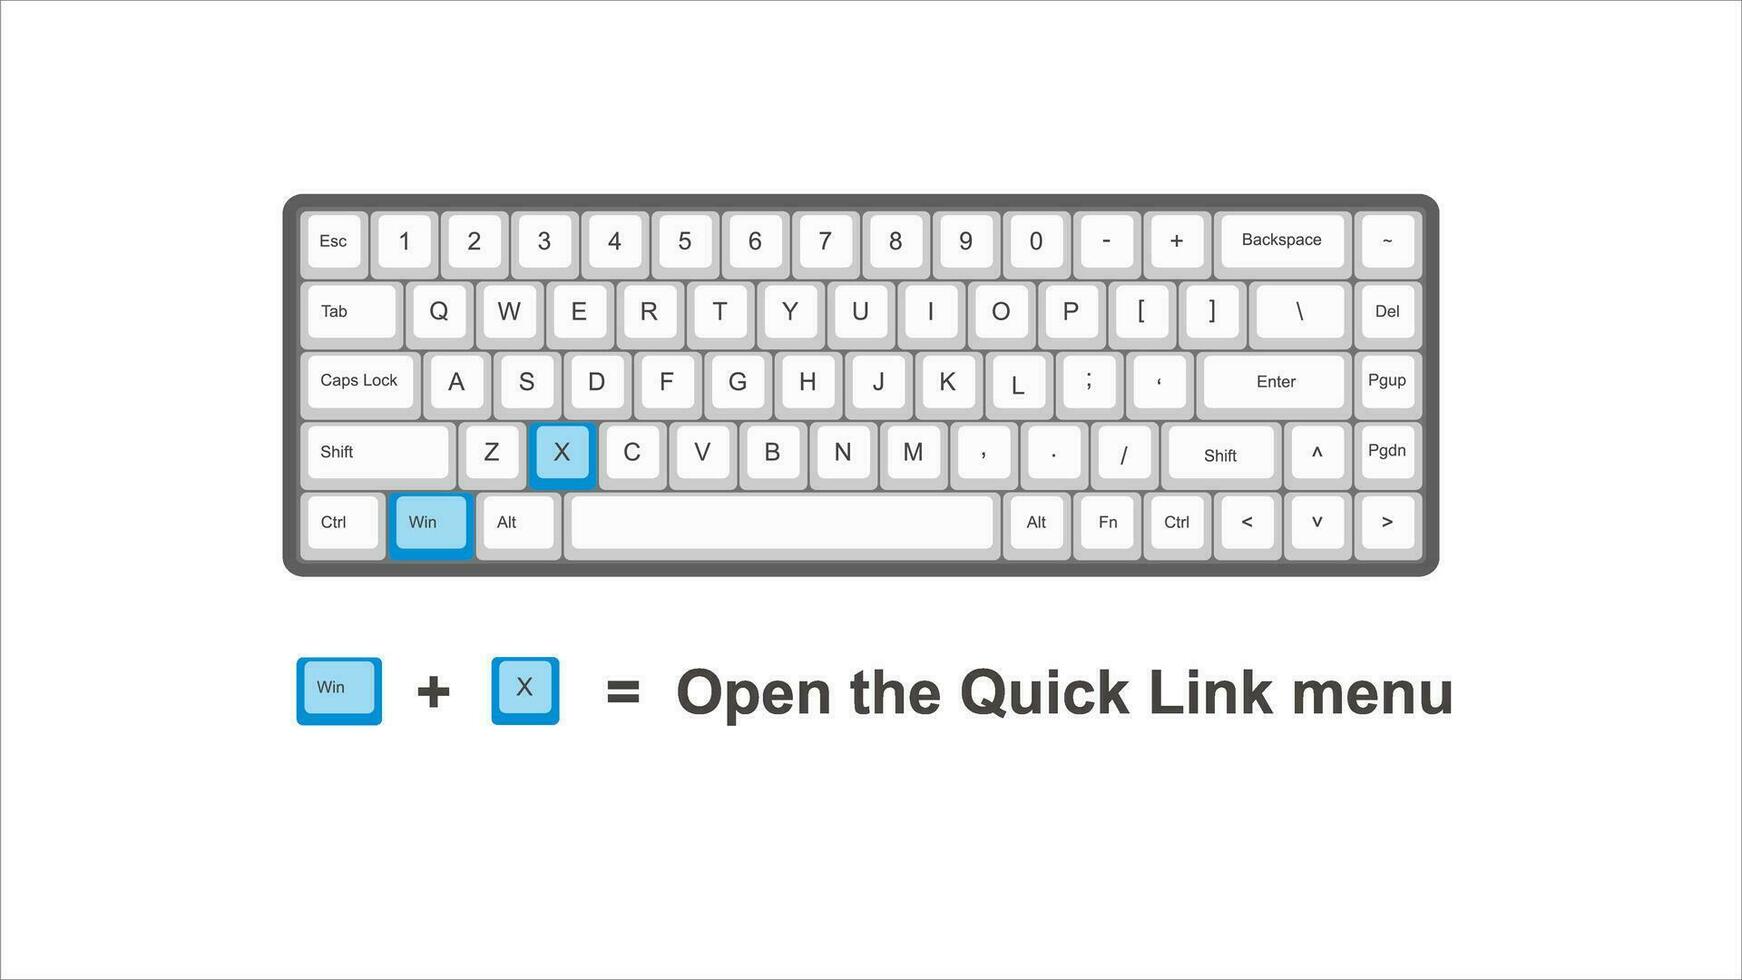 vetor ao controle ganhar x aberto a rápido ligação cardápio - teclado atalhos - janelas com teclado branco e azul ilustração e transparente fundo